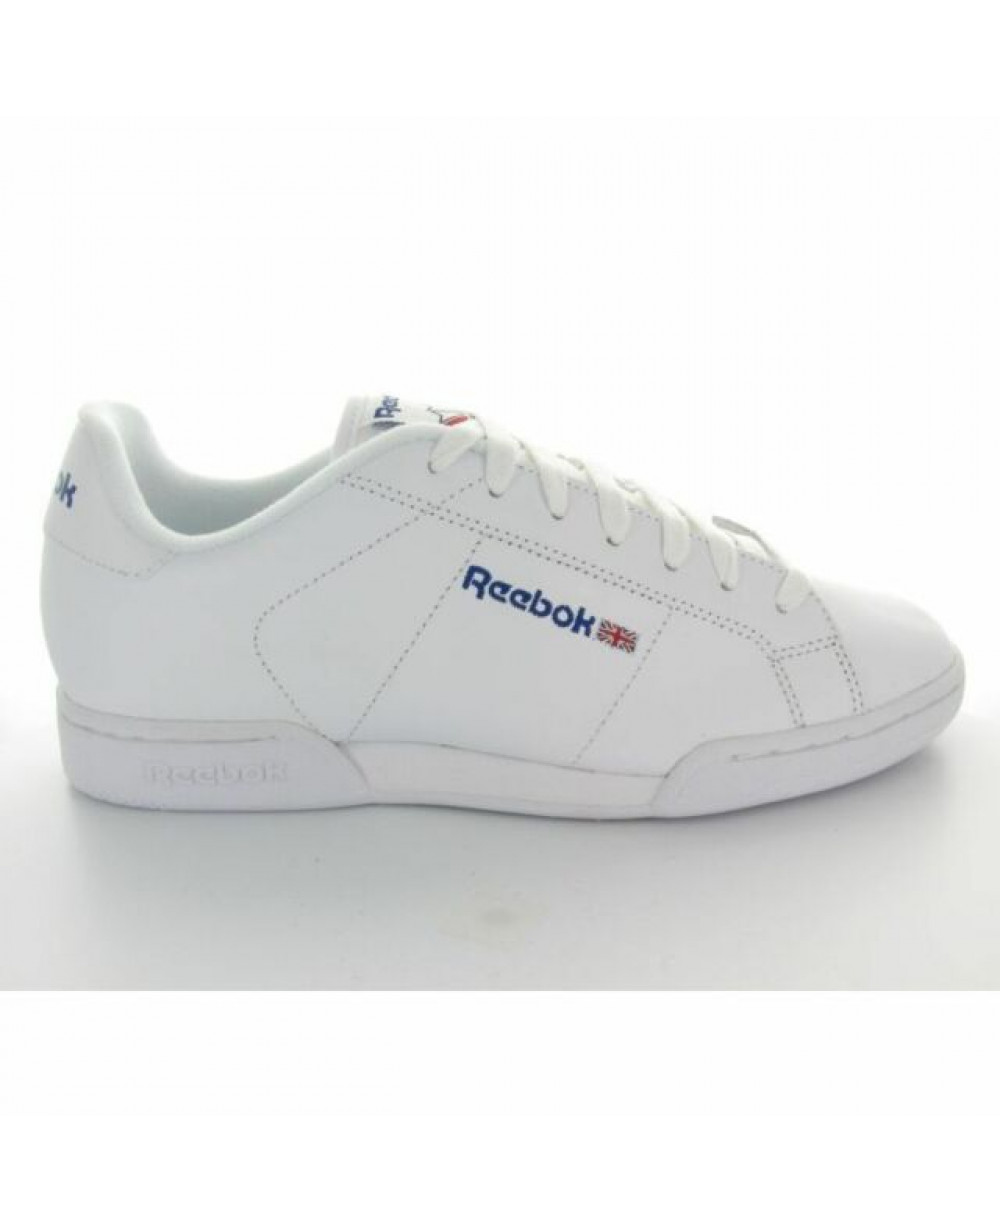 reebok men's white shoes